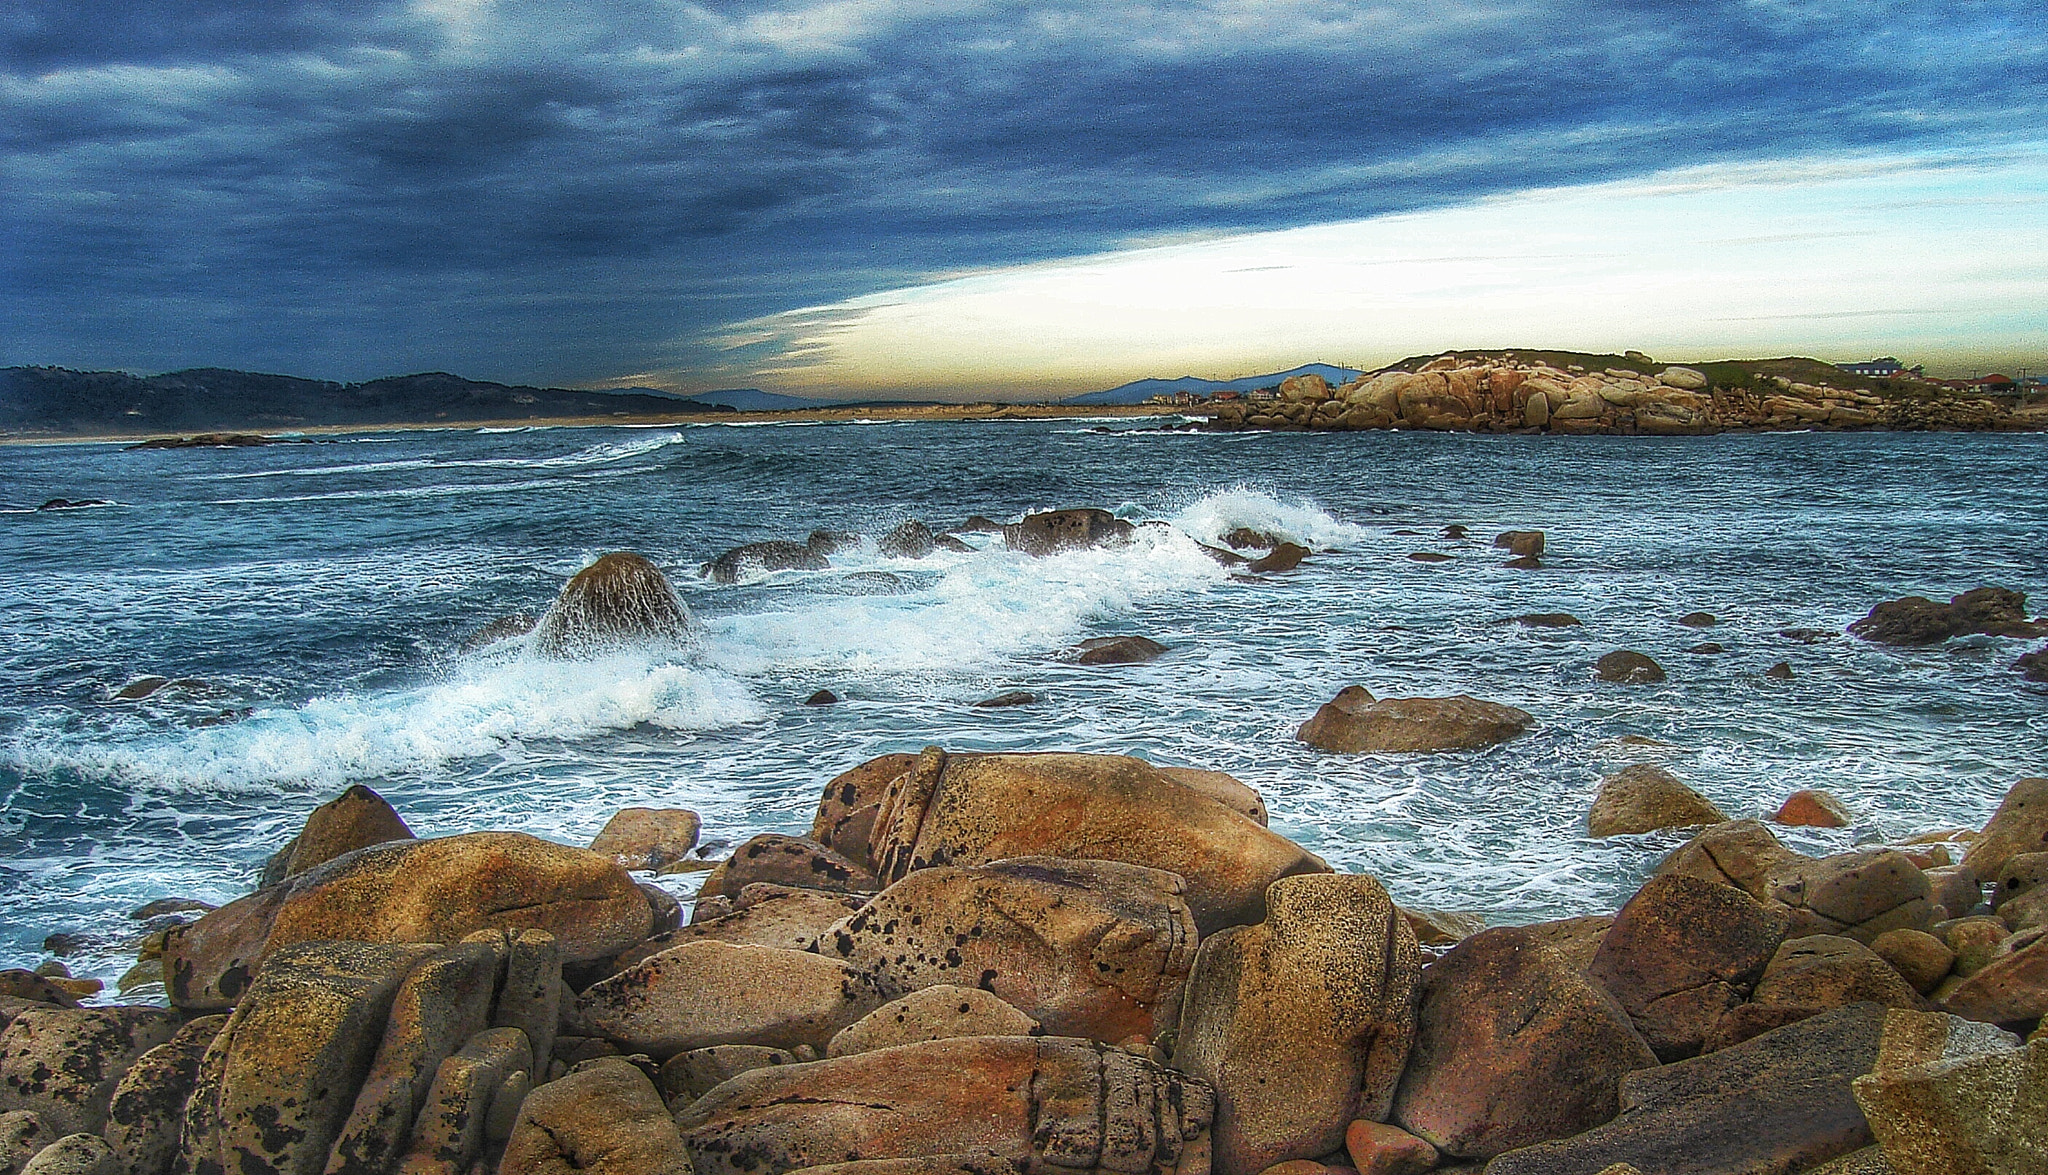 Sony DSC-S600 sample photo. Las rocas y el mar en galicia photography